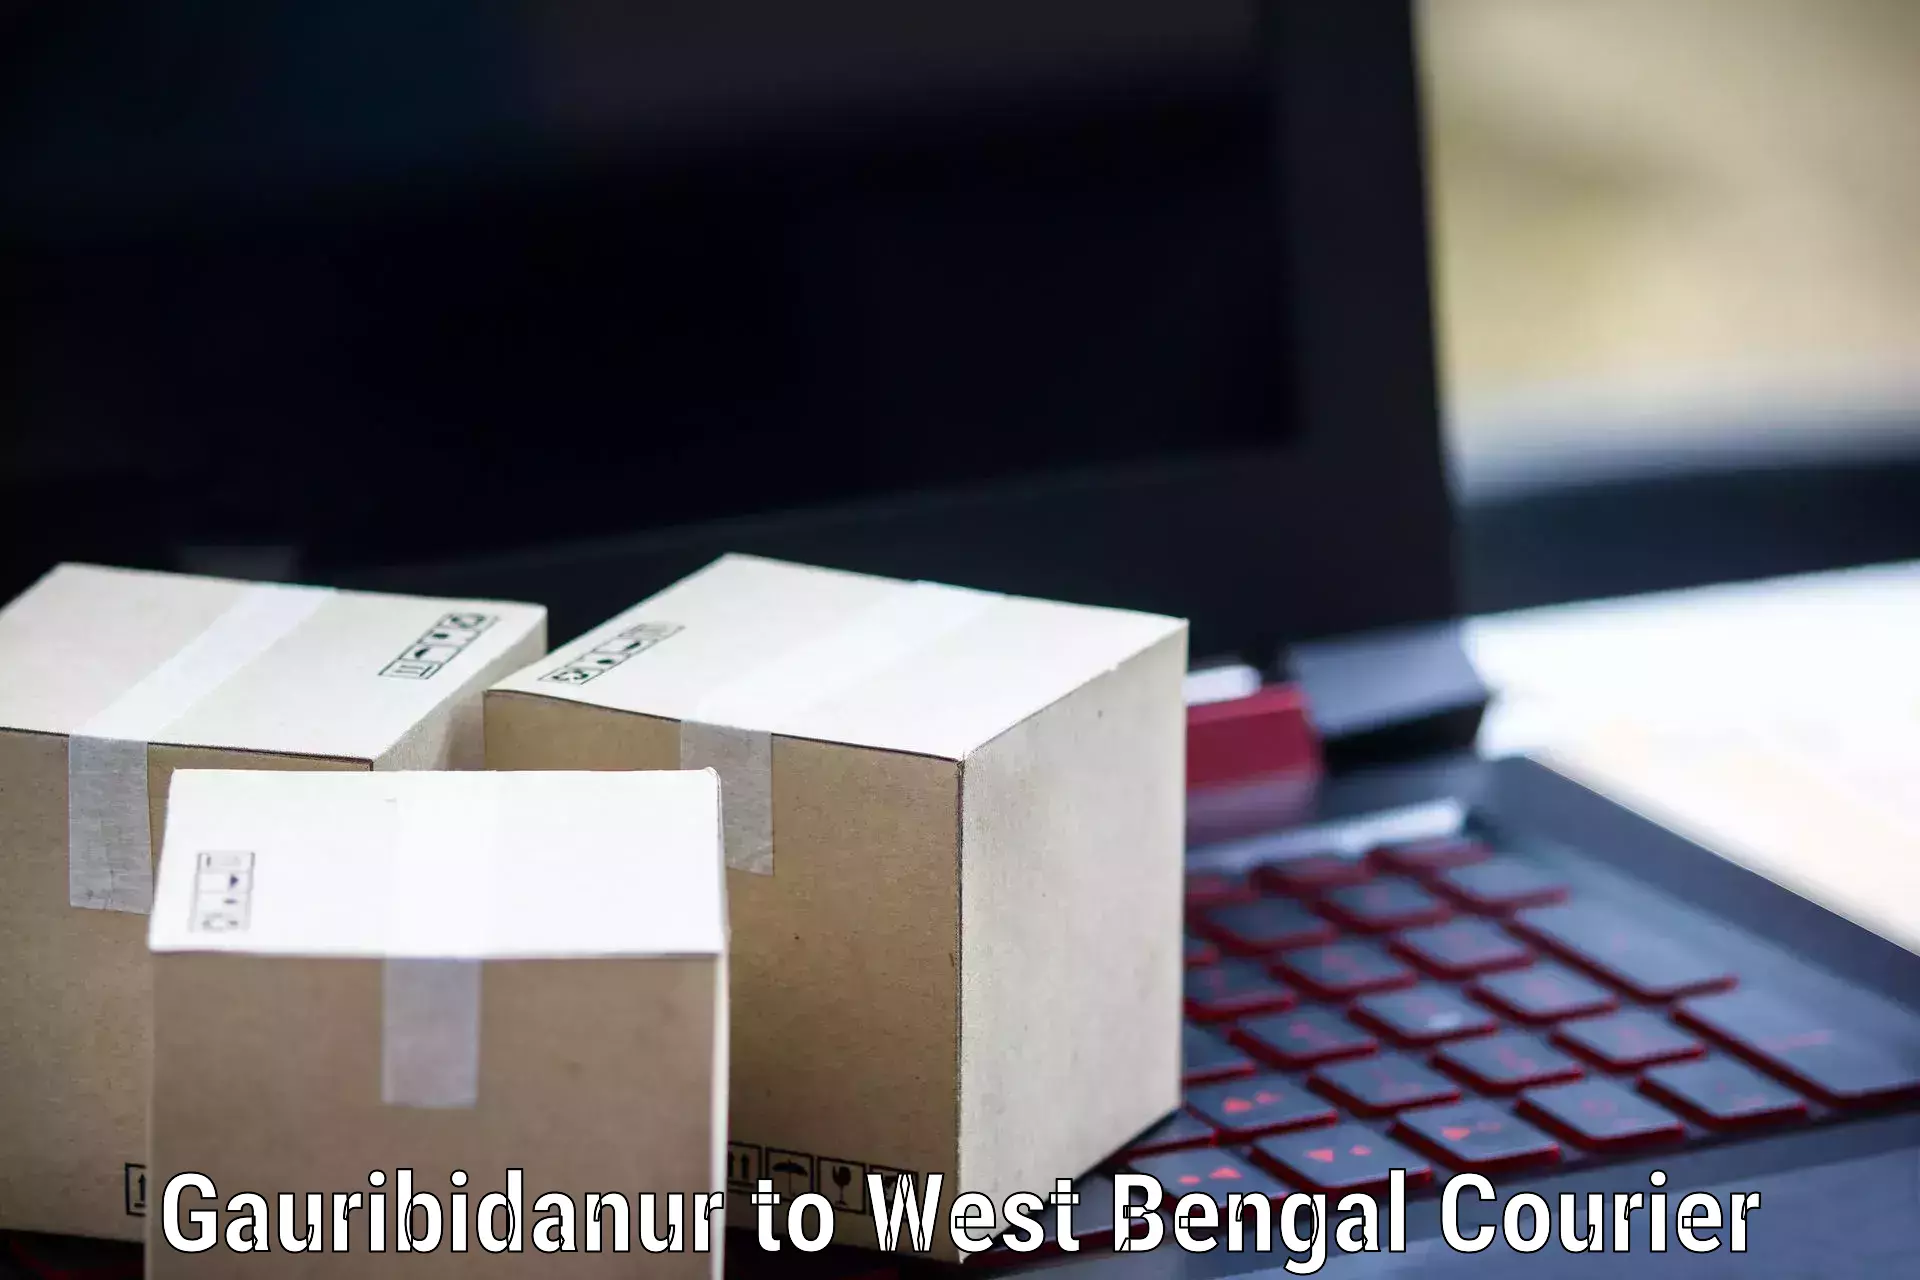 Professional courier handling Gauribidanur to Rampurhat